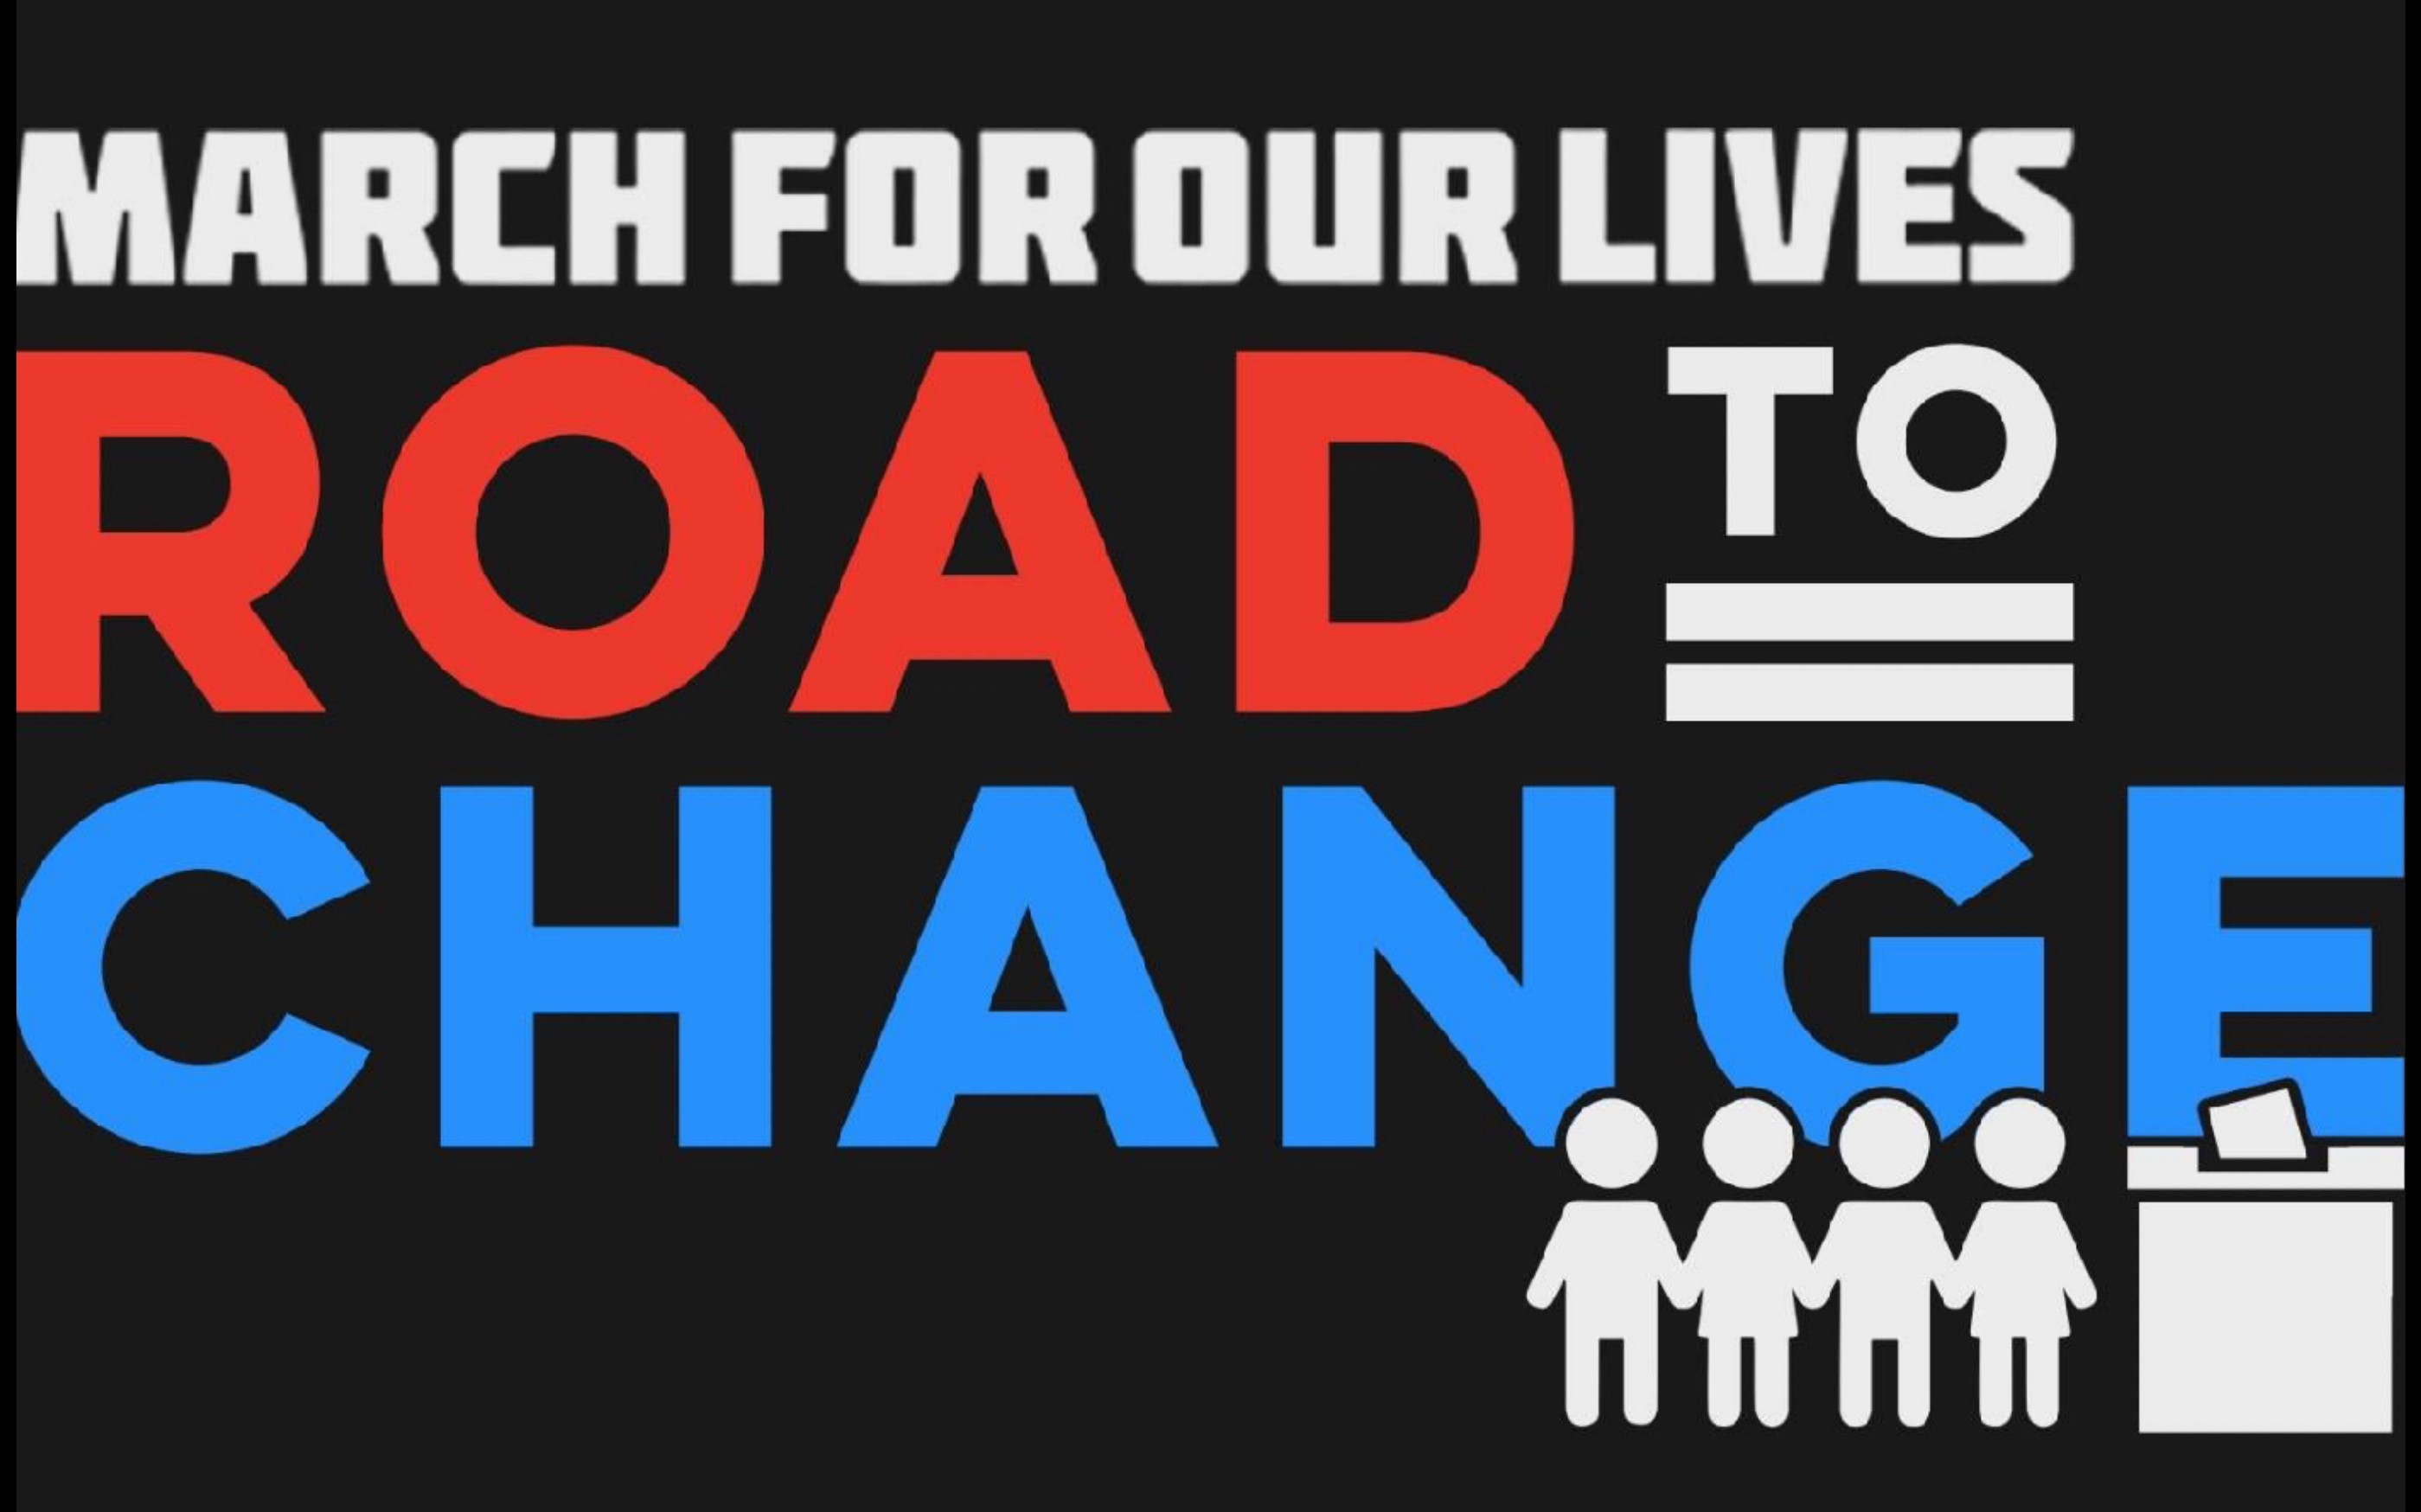 Road to change: un'inchiesta giornalistica sulla generazione che vuole cambiare l'America